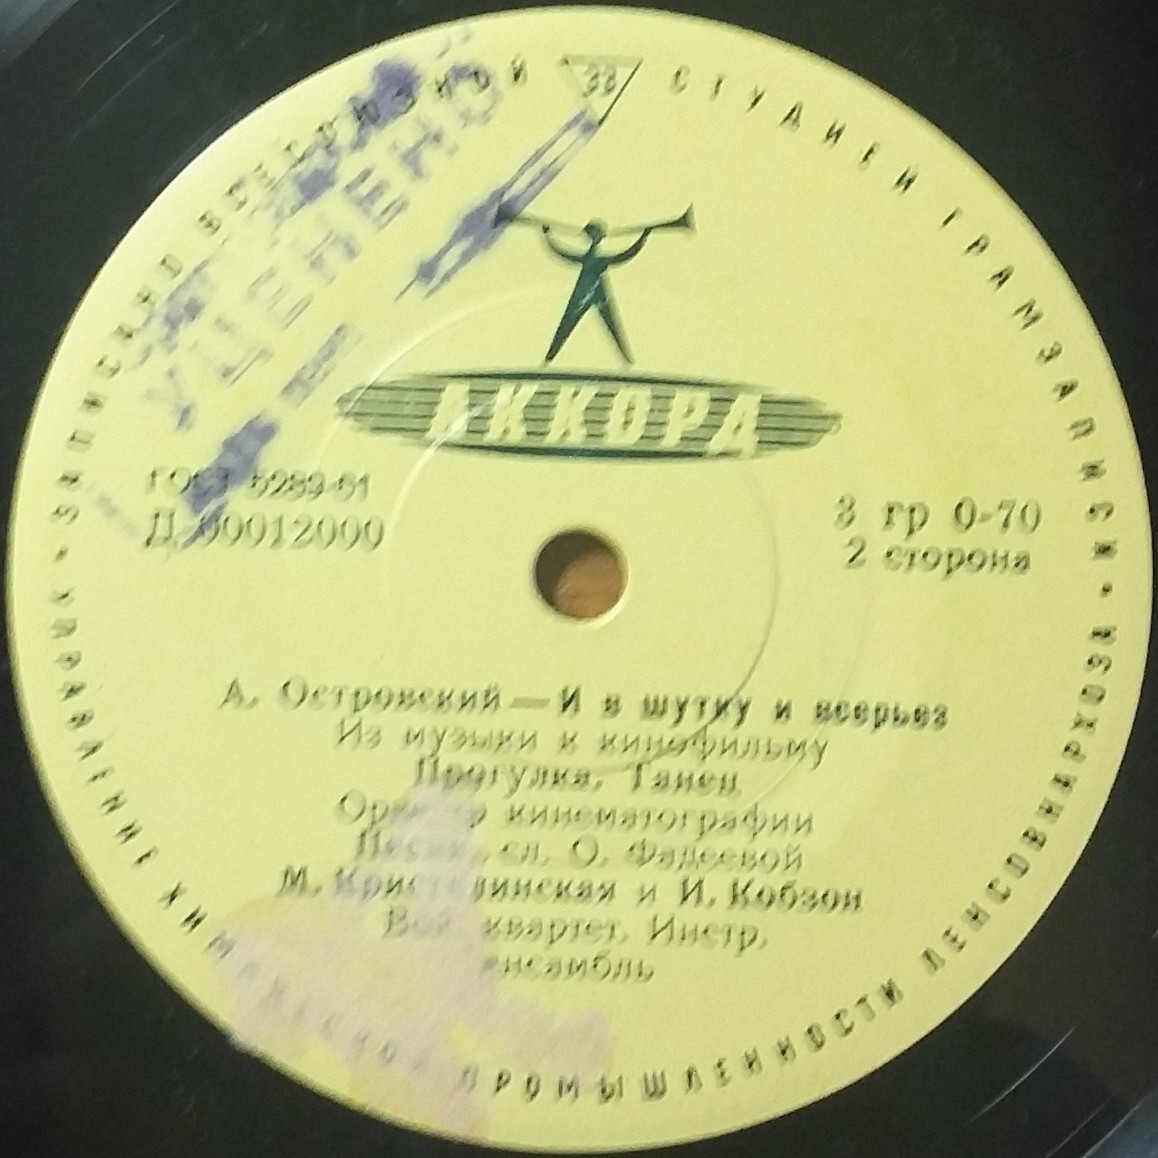 А. ОСТРОВСКИЙ (1914-1967) - Из музыки к к/ф «И в шутку и всерьез»